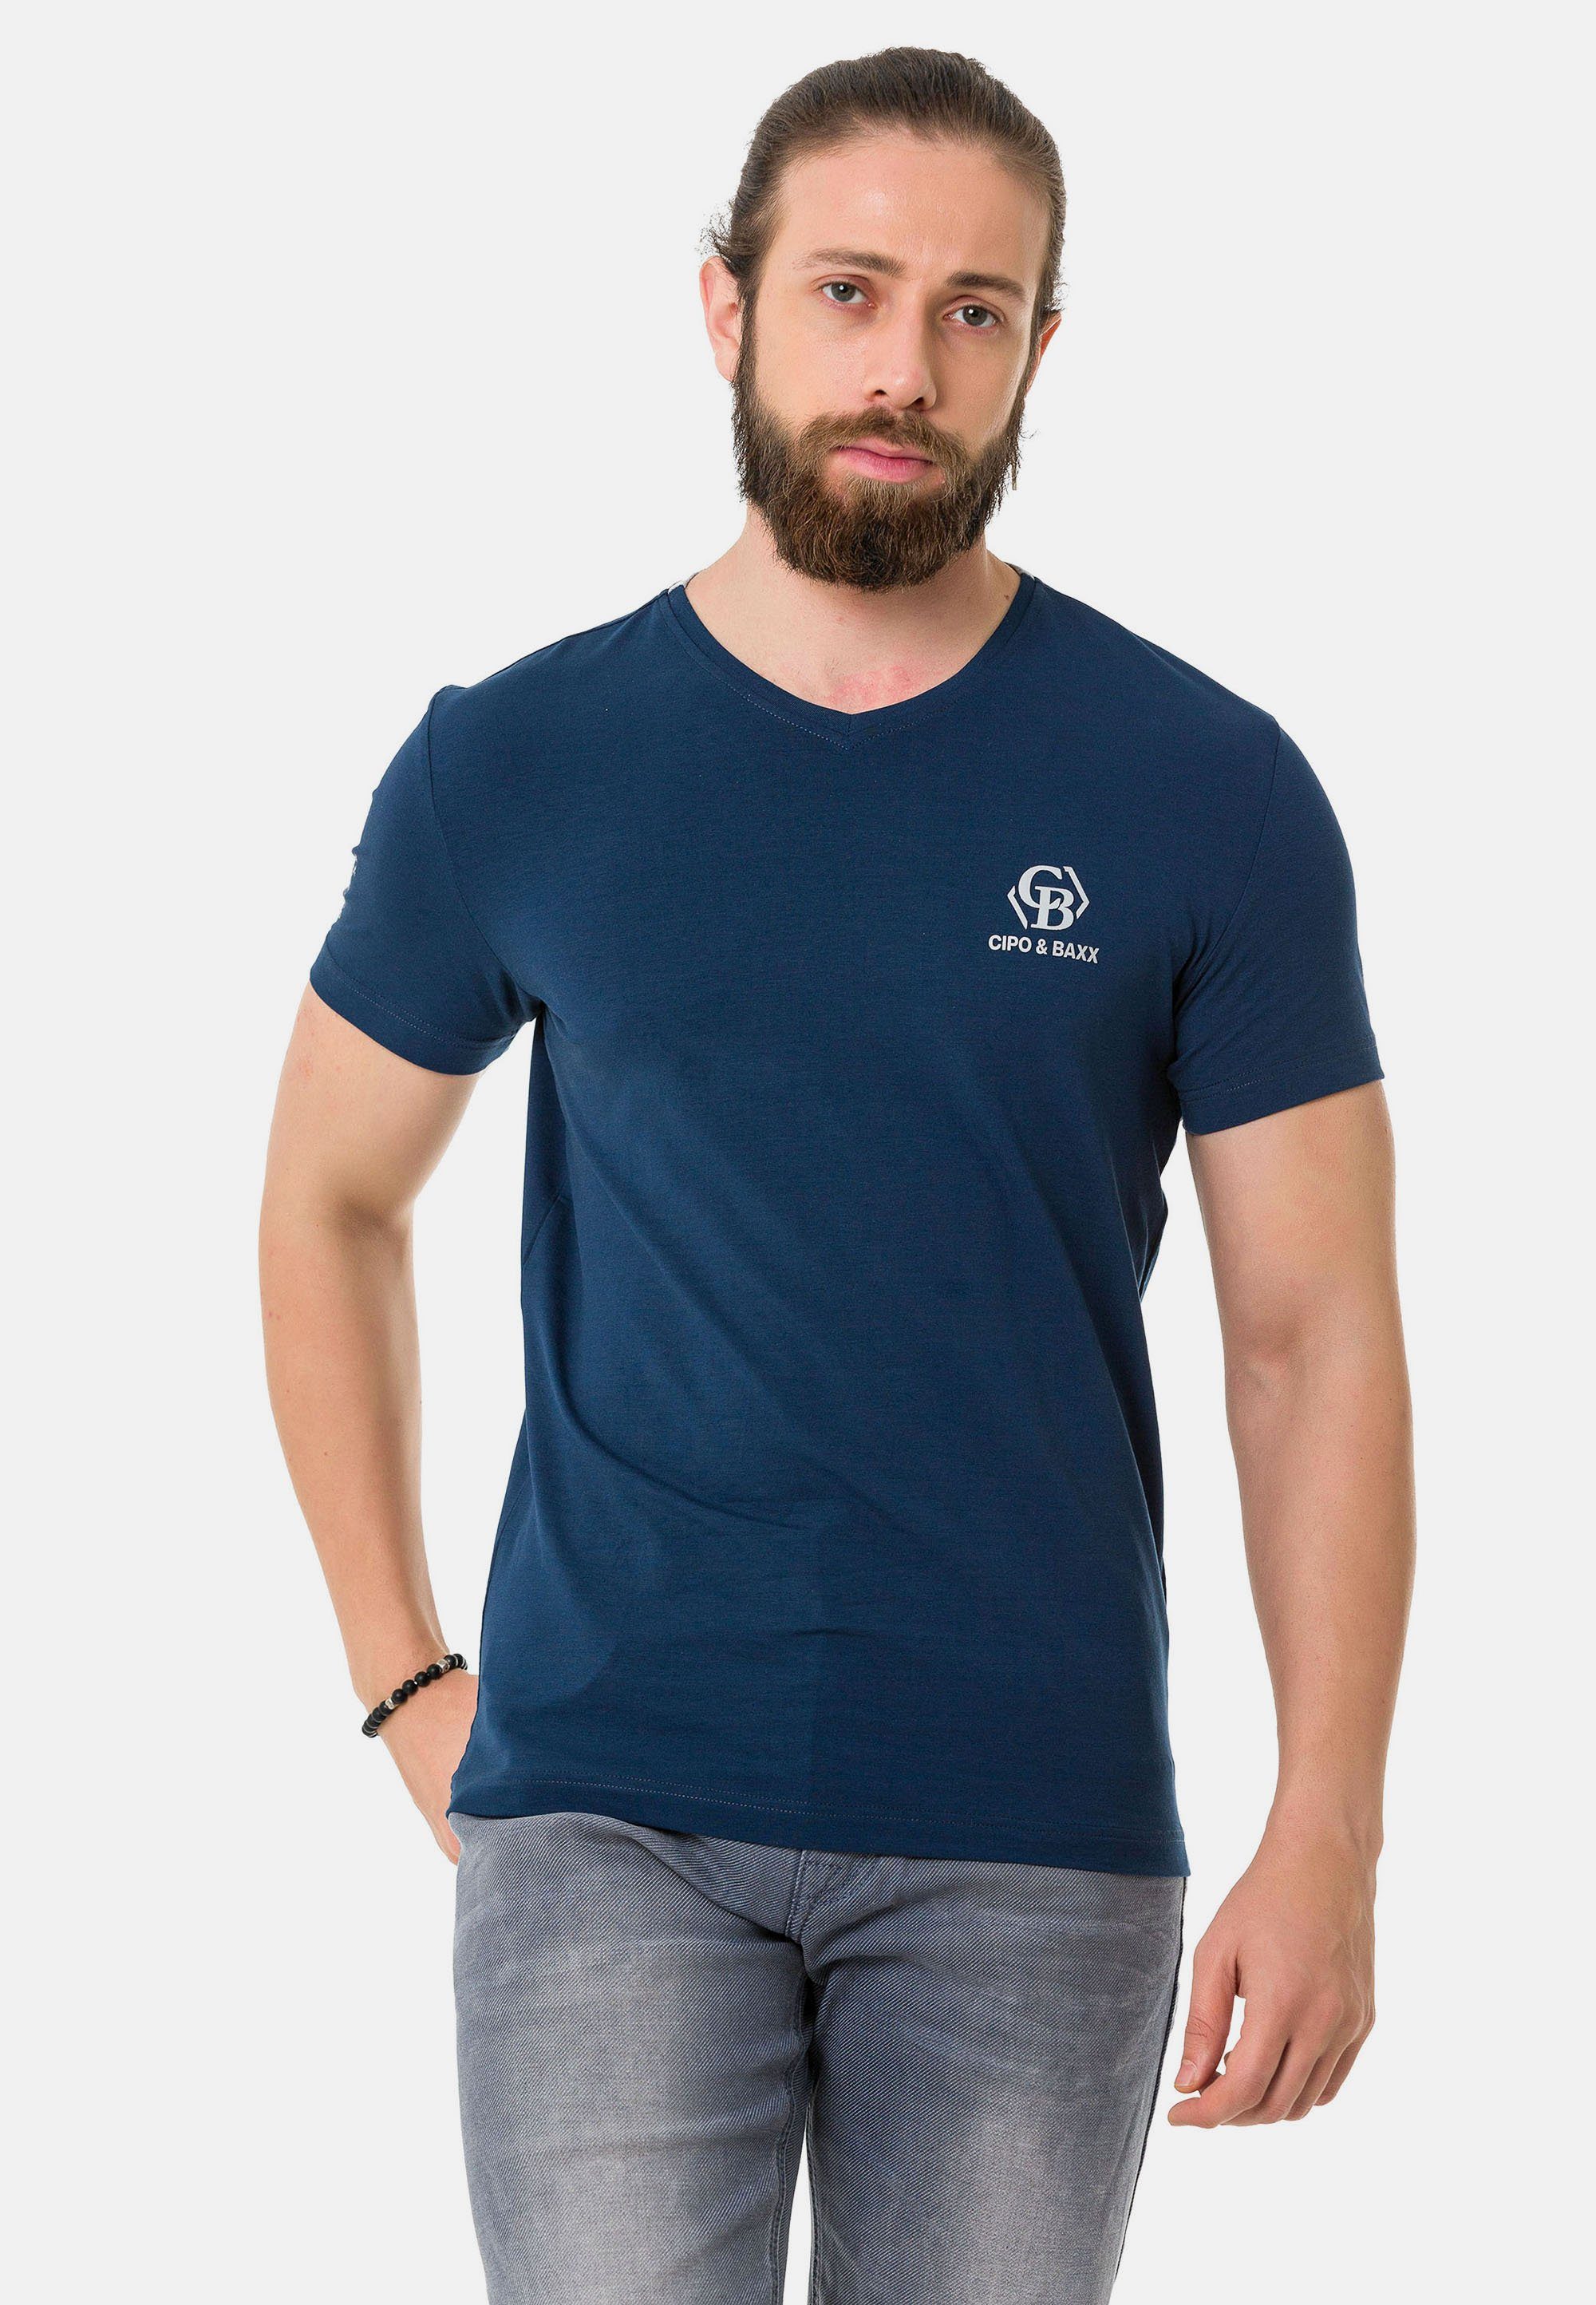 & Cipo dezenten blau mit Markenlogos T-Shirt Baxx